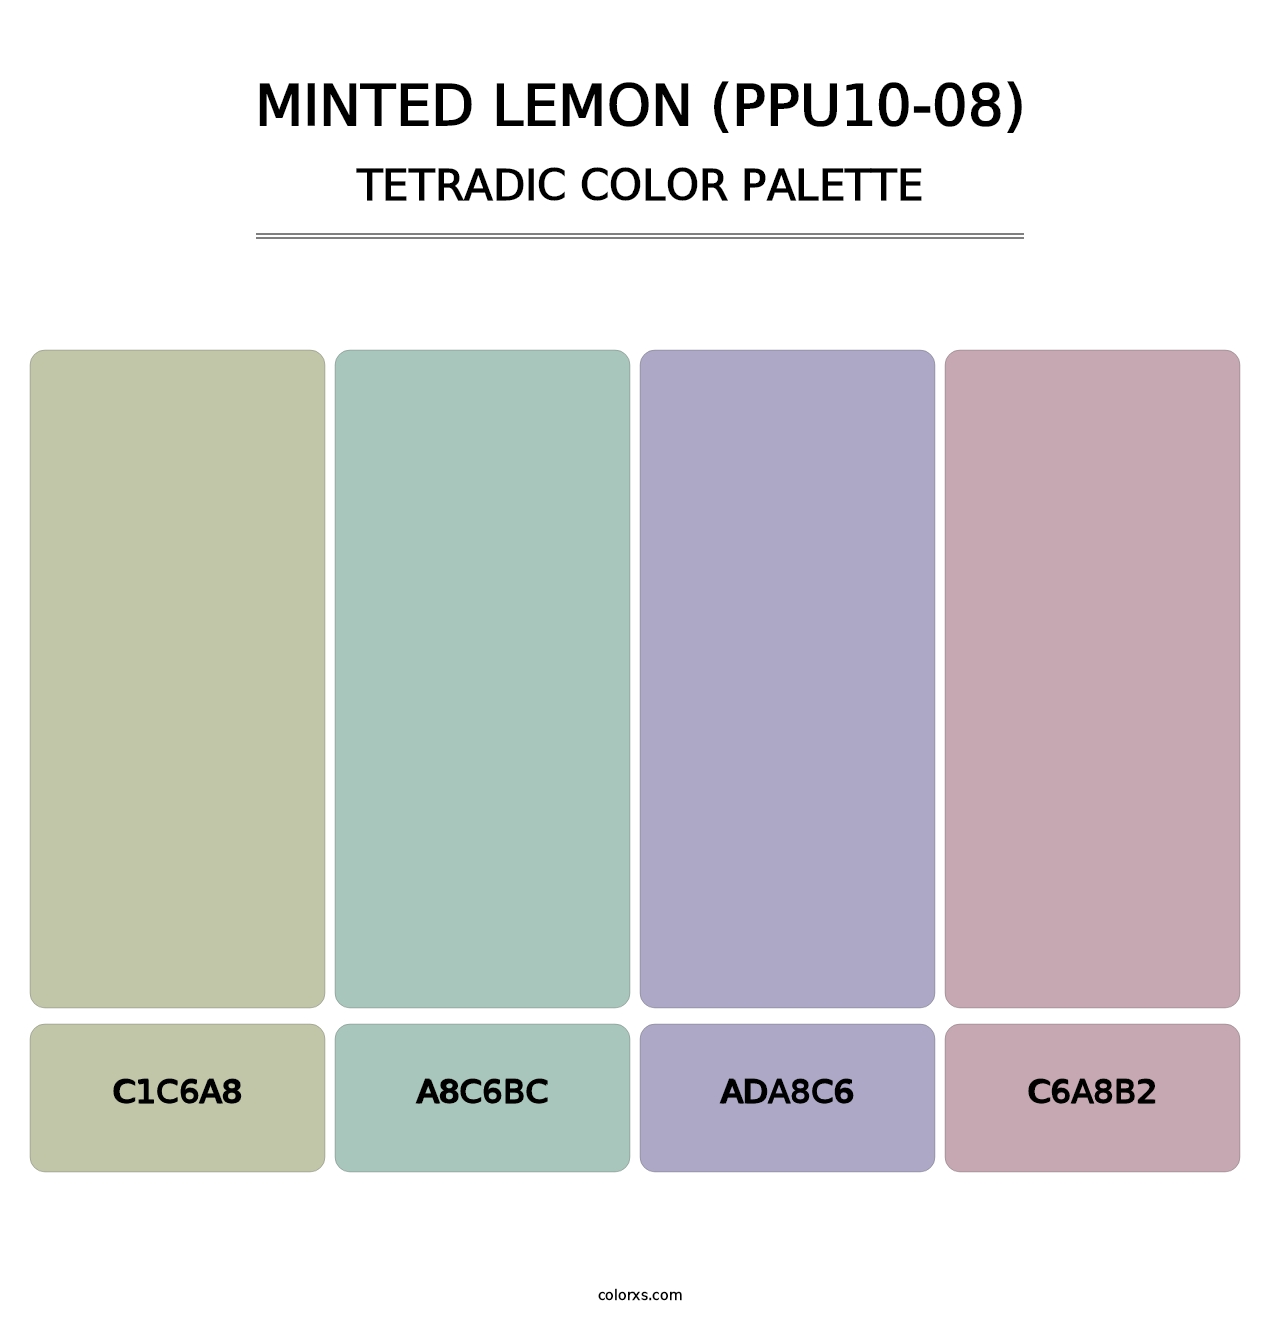 Minted Lemon (PPU10-08) - Tetradic Color Palette